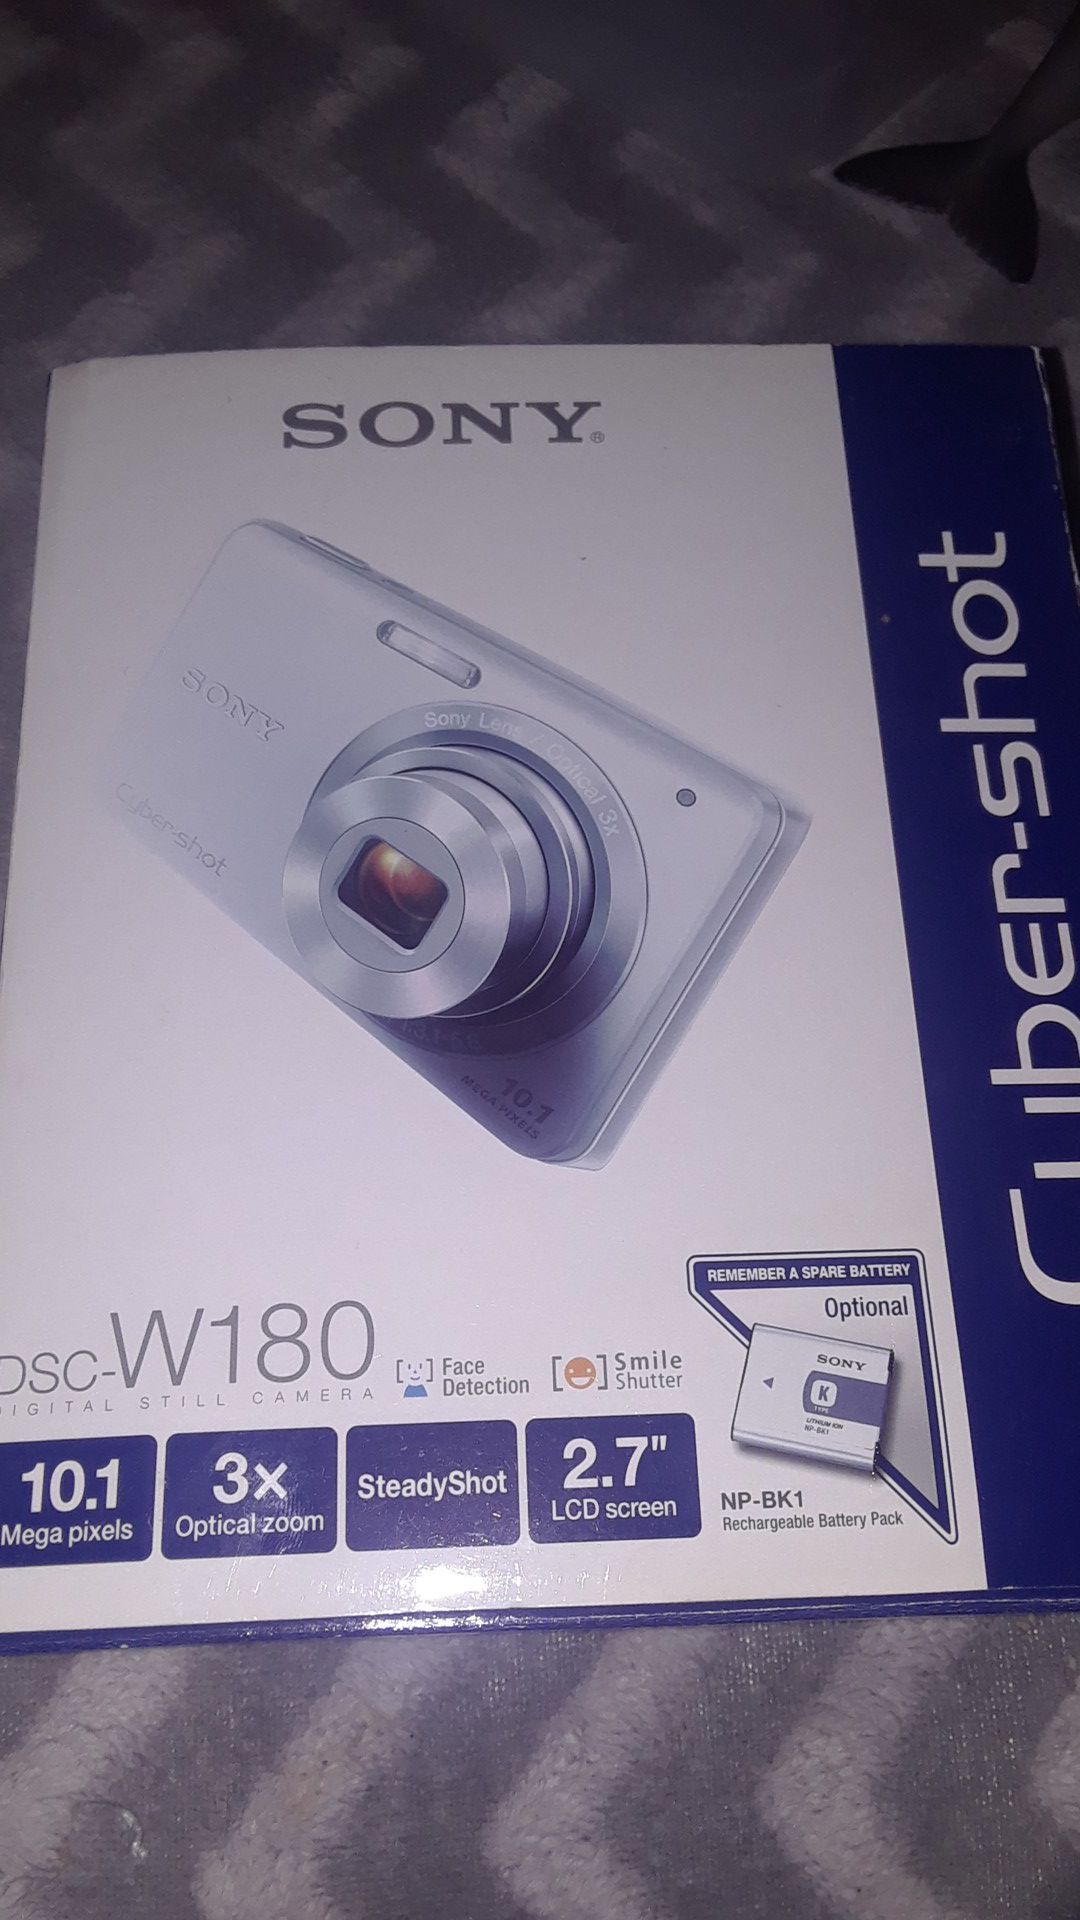 Sony Cybershot dsc-w180 Digital Still Camera